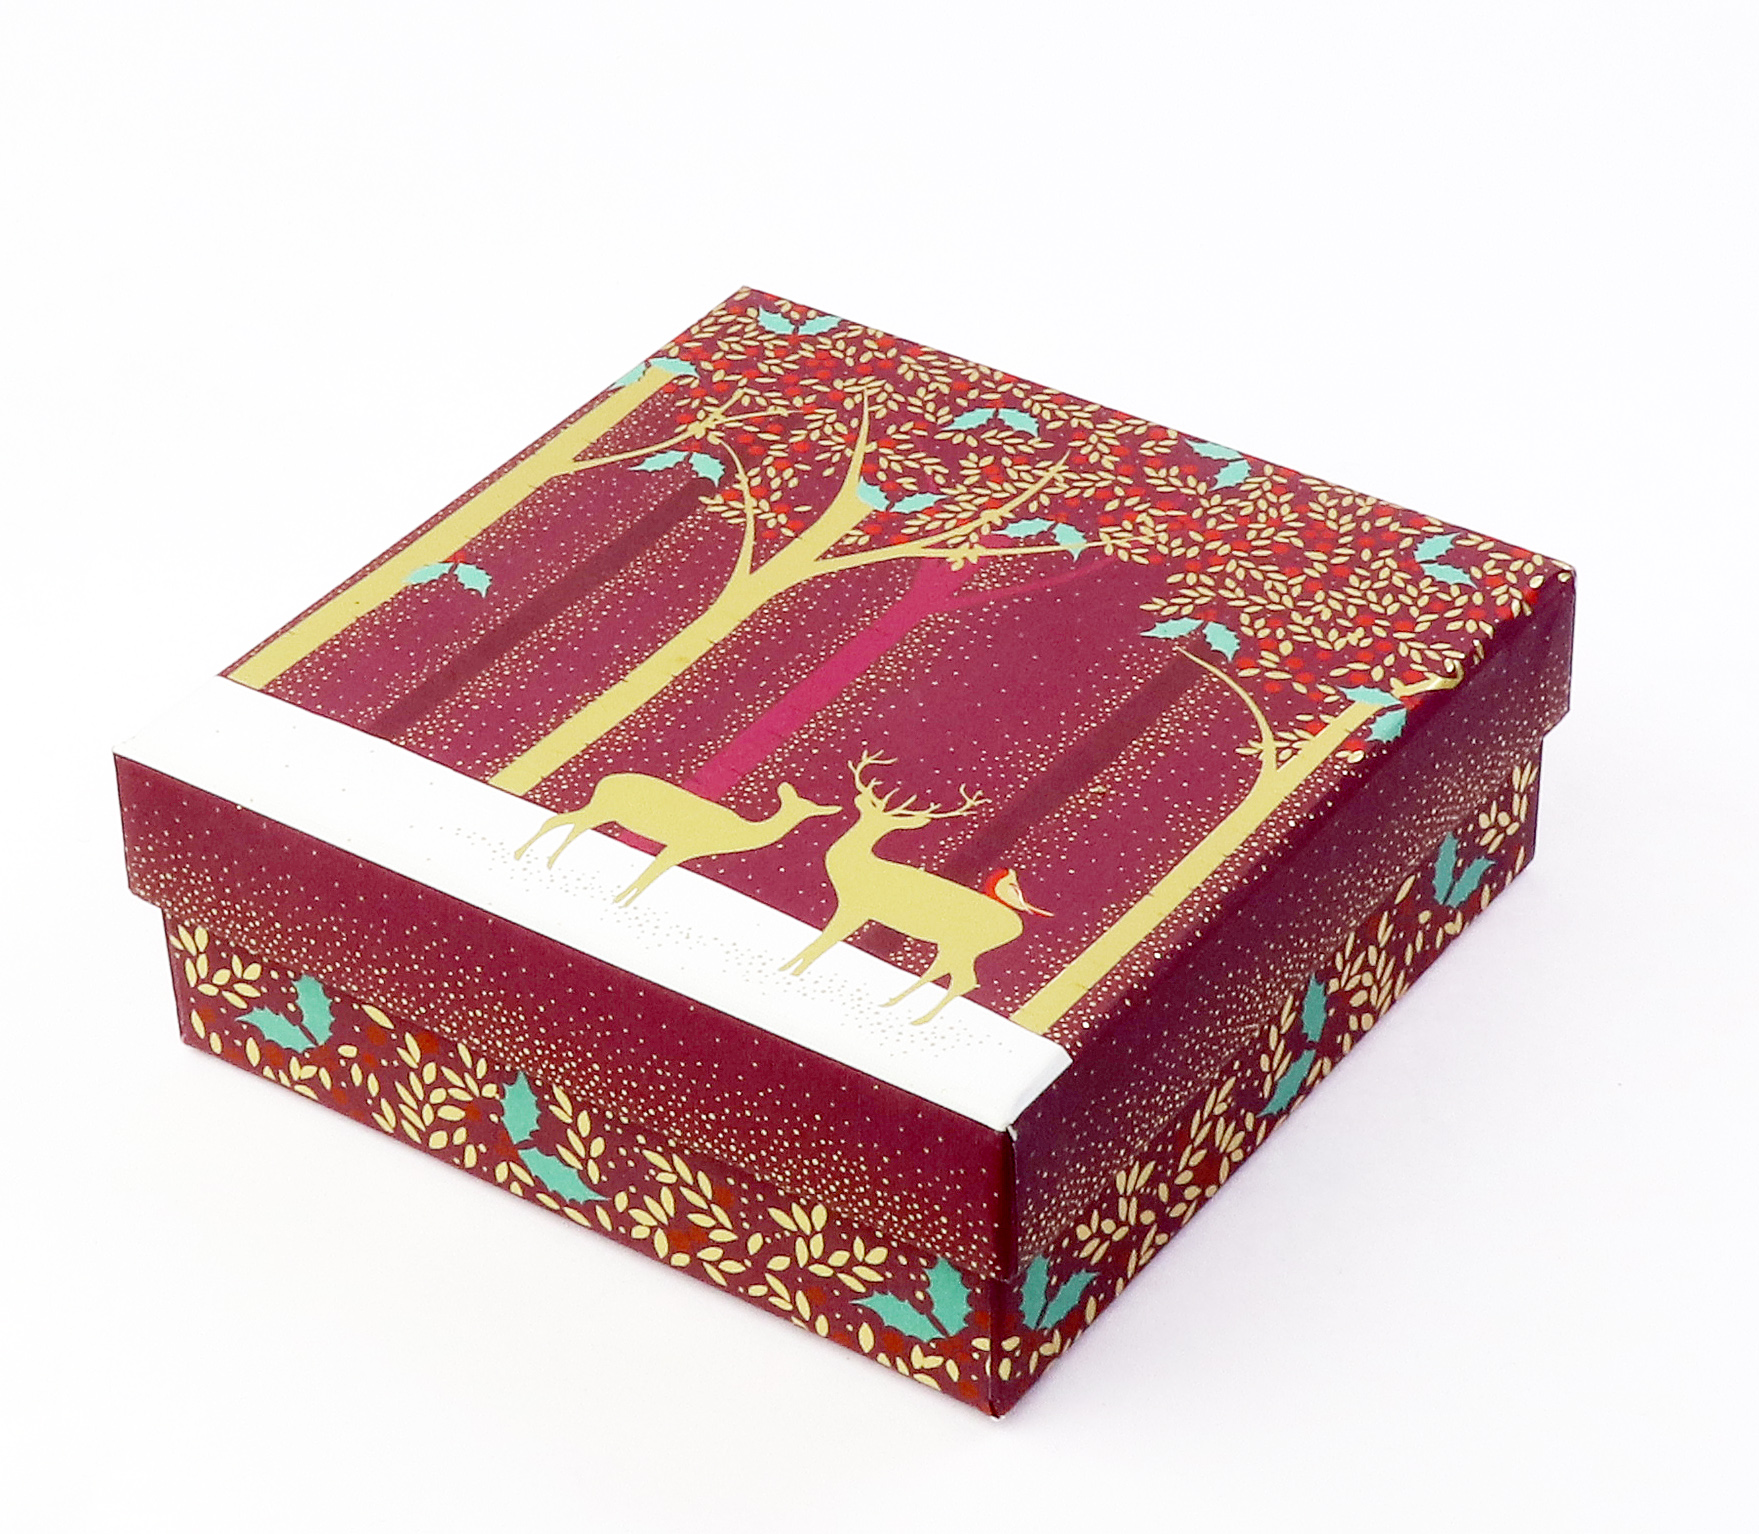 Cutie cadou - Deer, small box | Sara Miller London